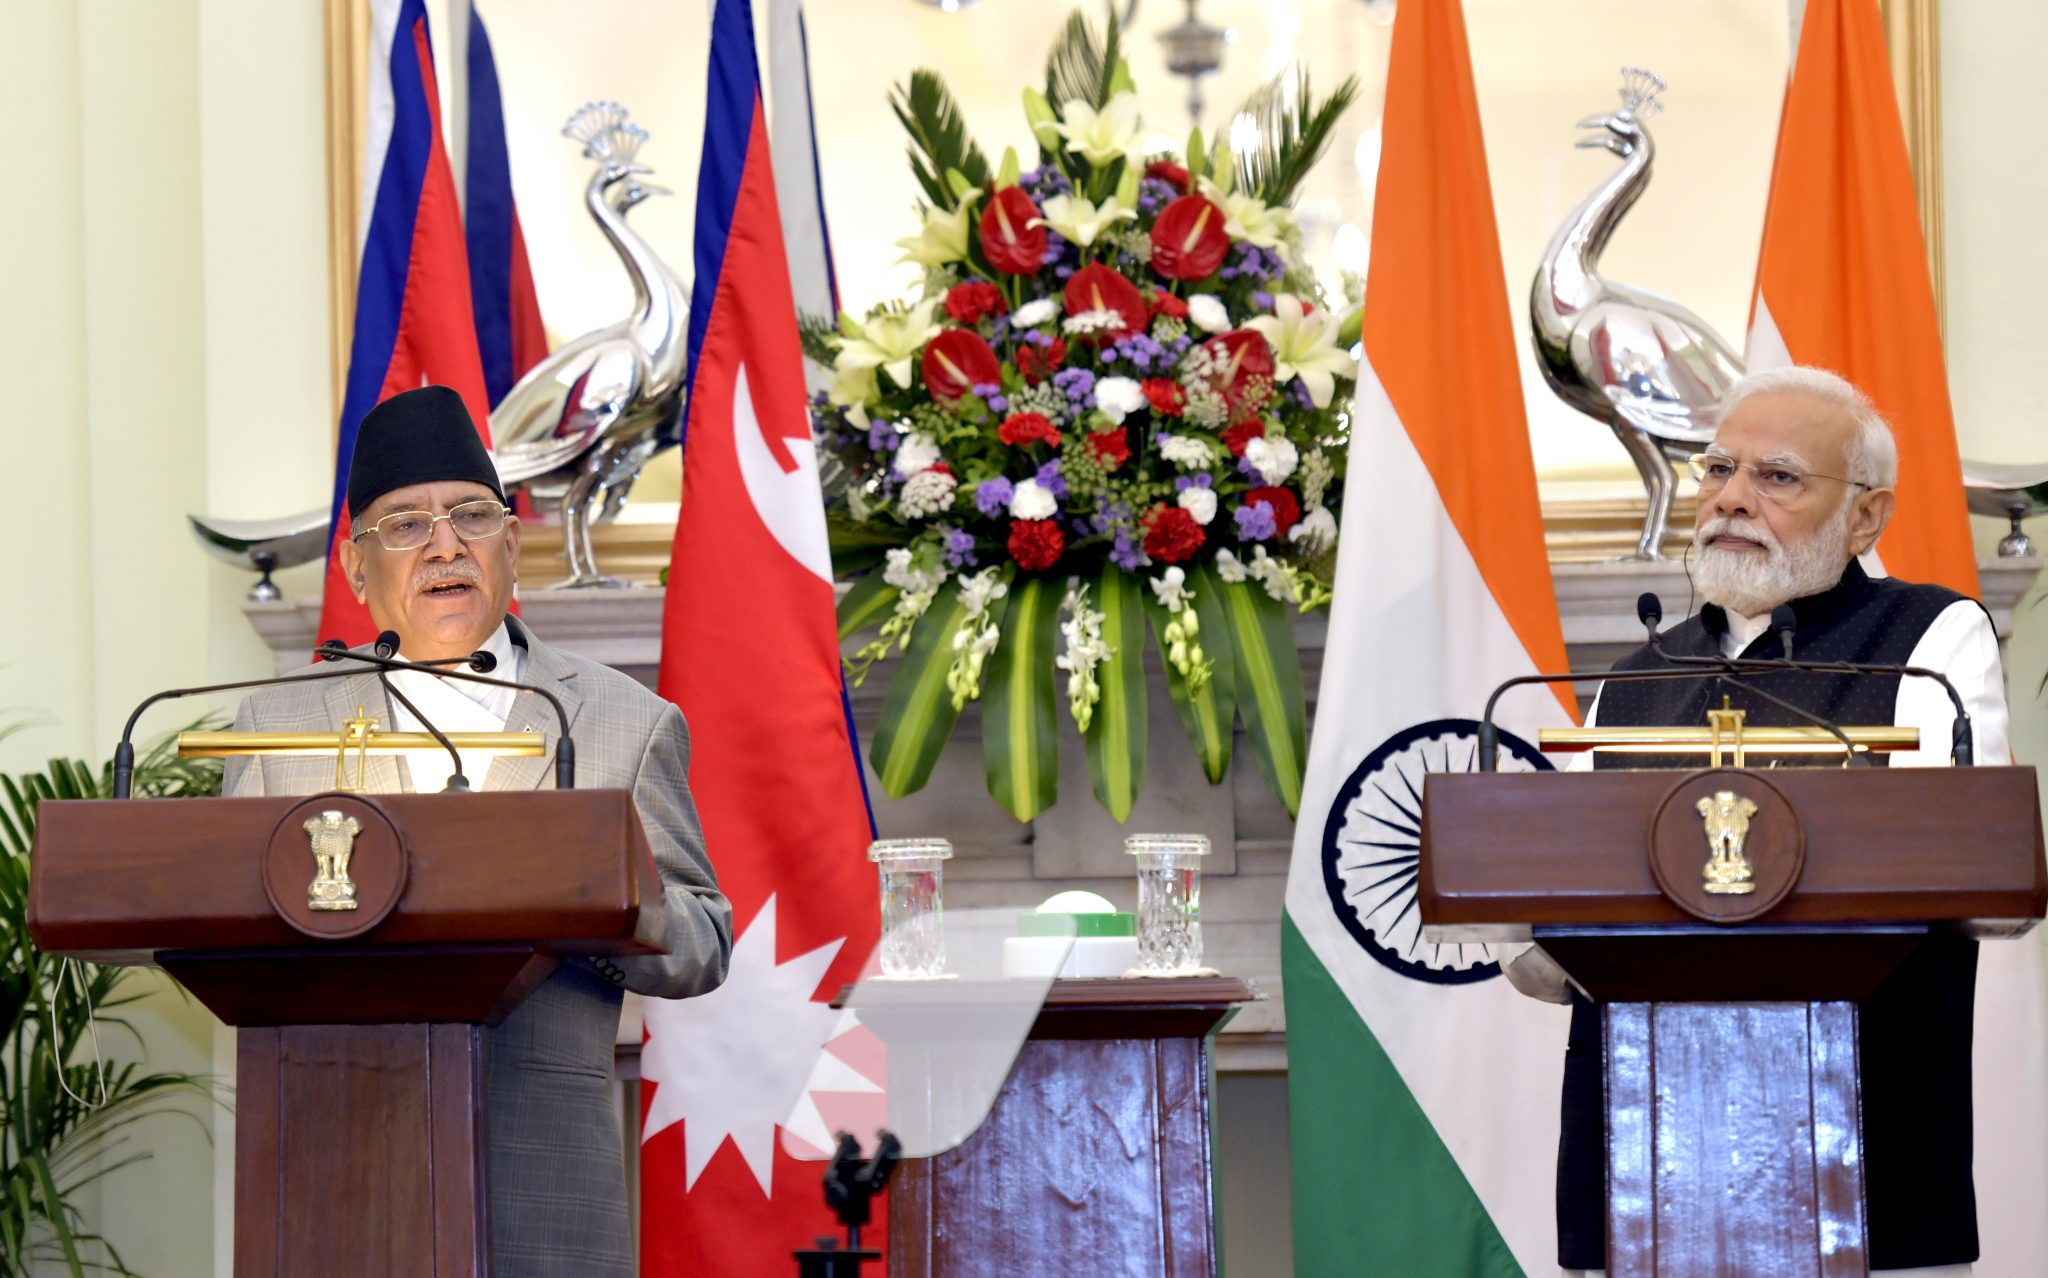 Uproar in Nepal over Modi's Kalapani visit